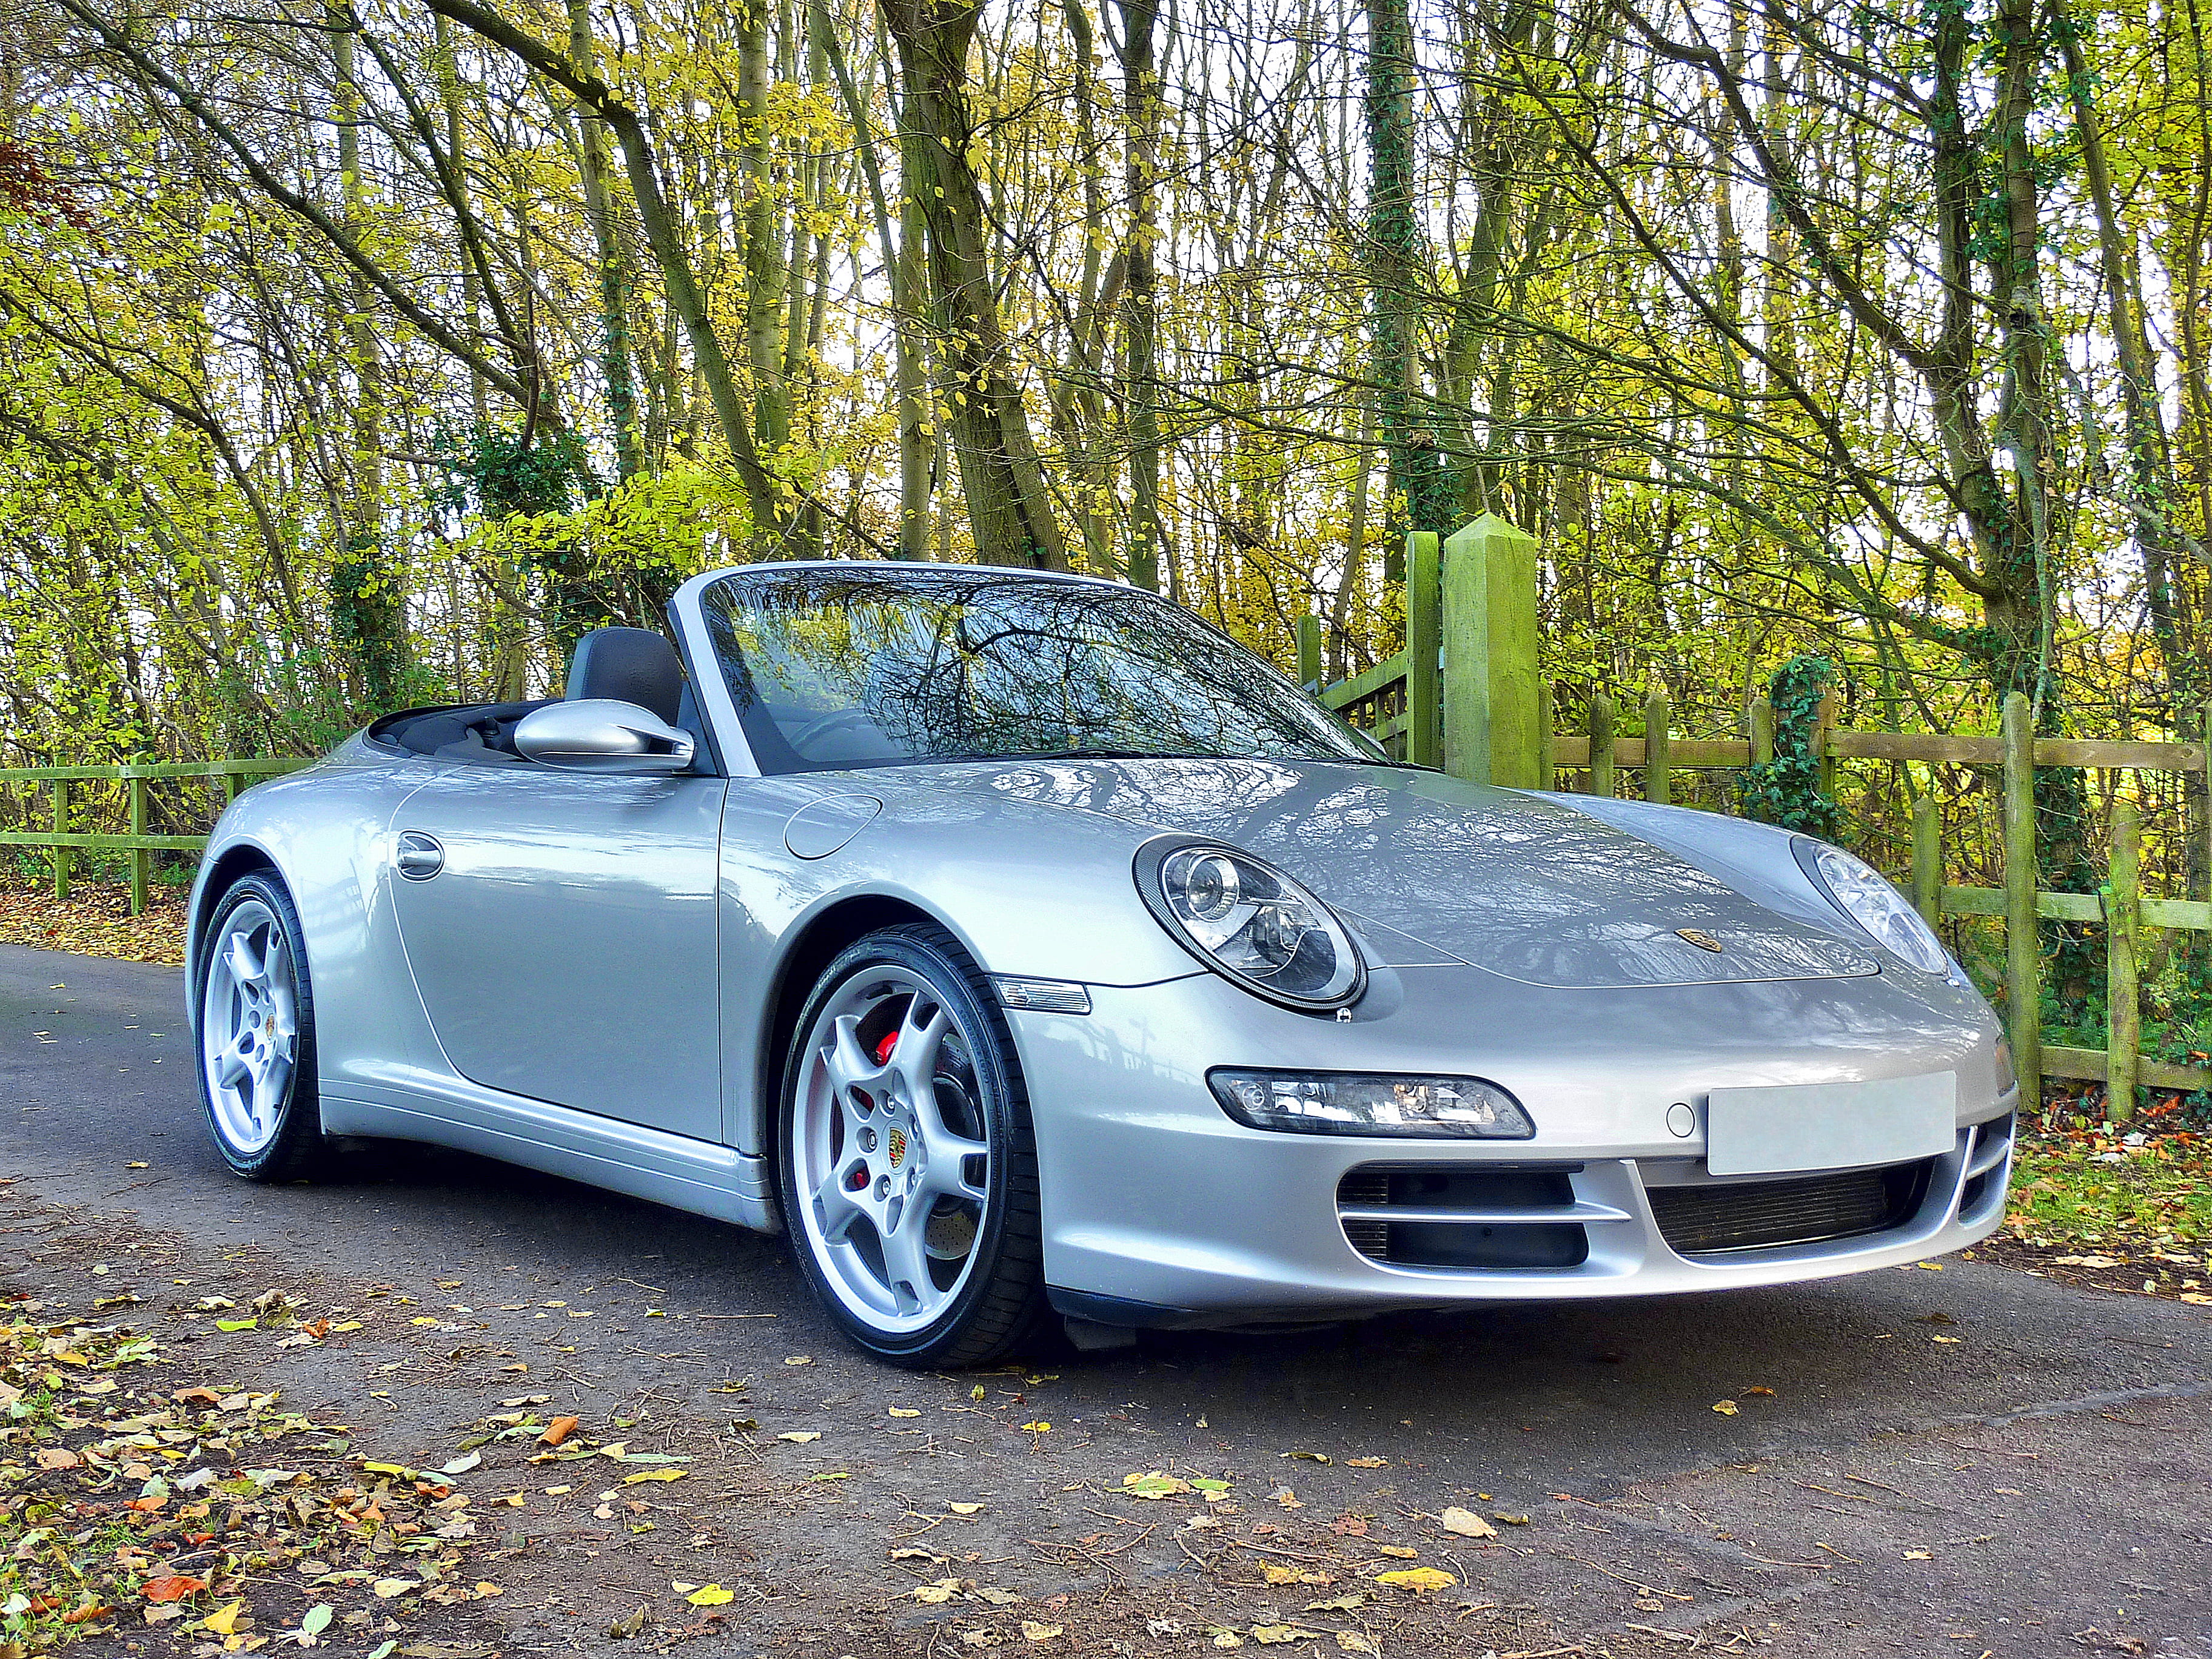 Silver Porsche 911 Convertible, asphalt, auto, automobile, automotive